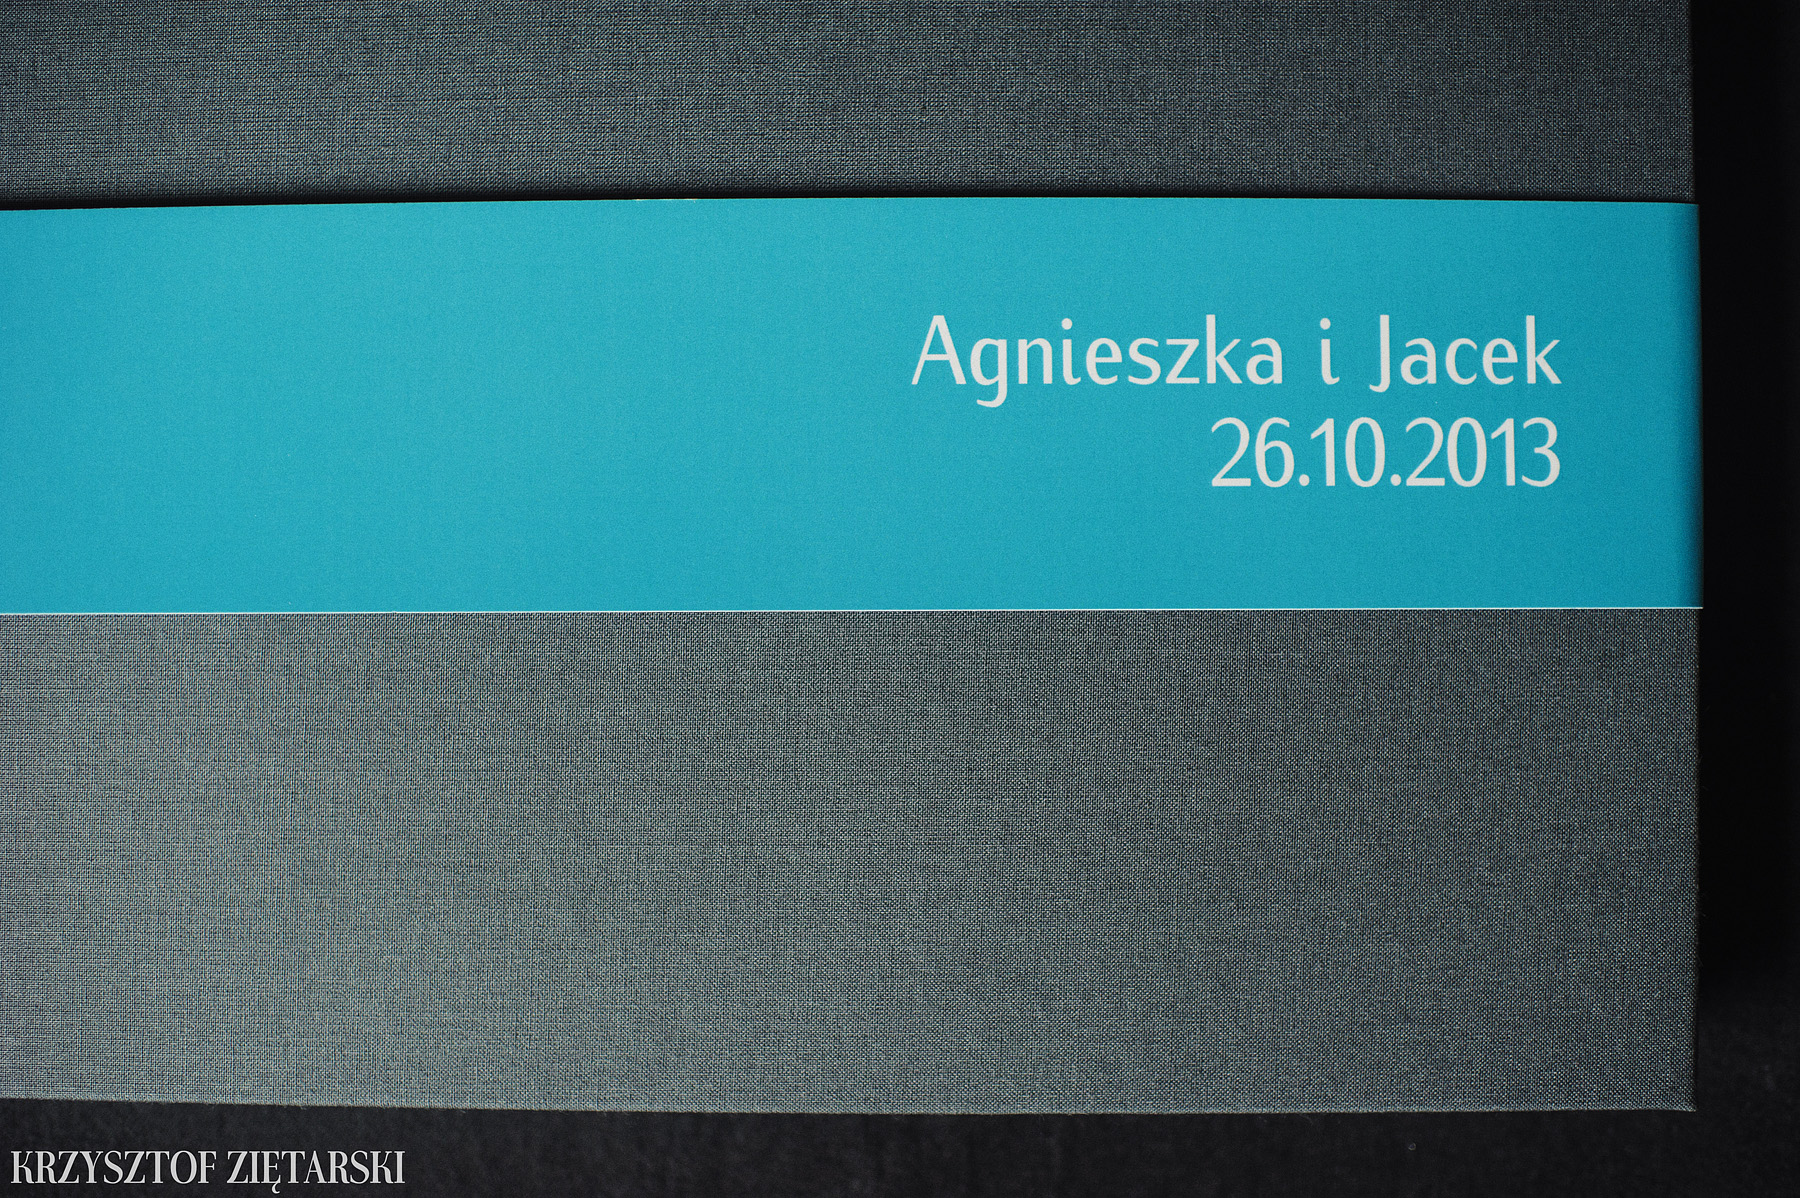 KrukBook 30x20cm, 120 stron na papierze powlekanym 170g/m2, płótno szare, niepowlekane C24, wyklejka w kolorze turkusowym 031, i turkusowa paskowa obwoluta.